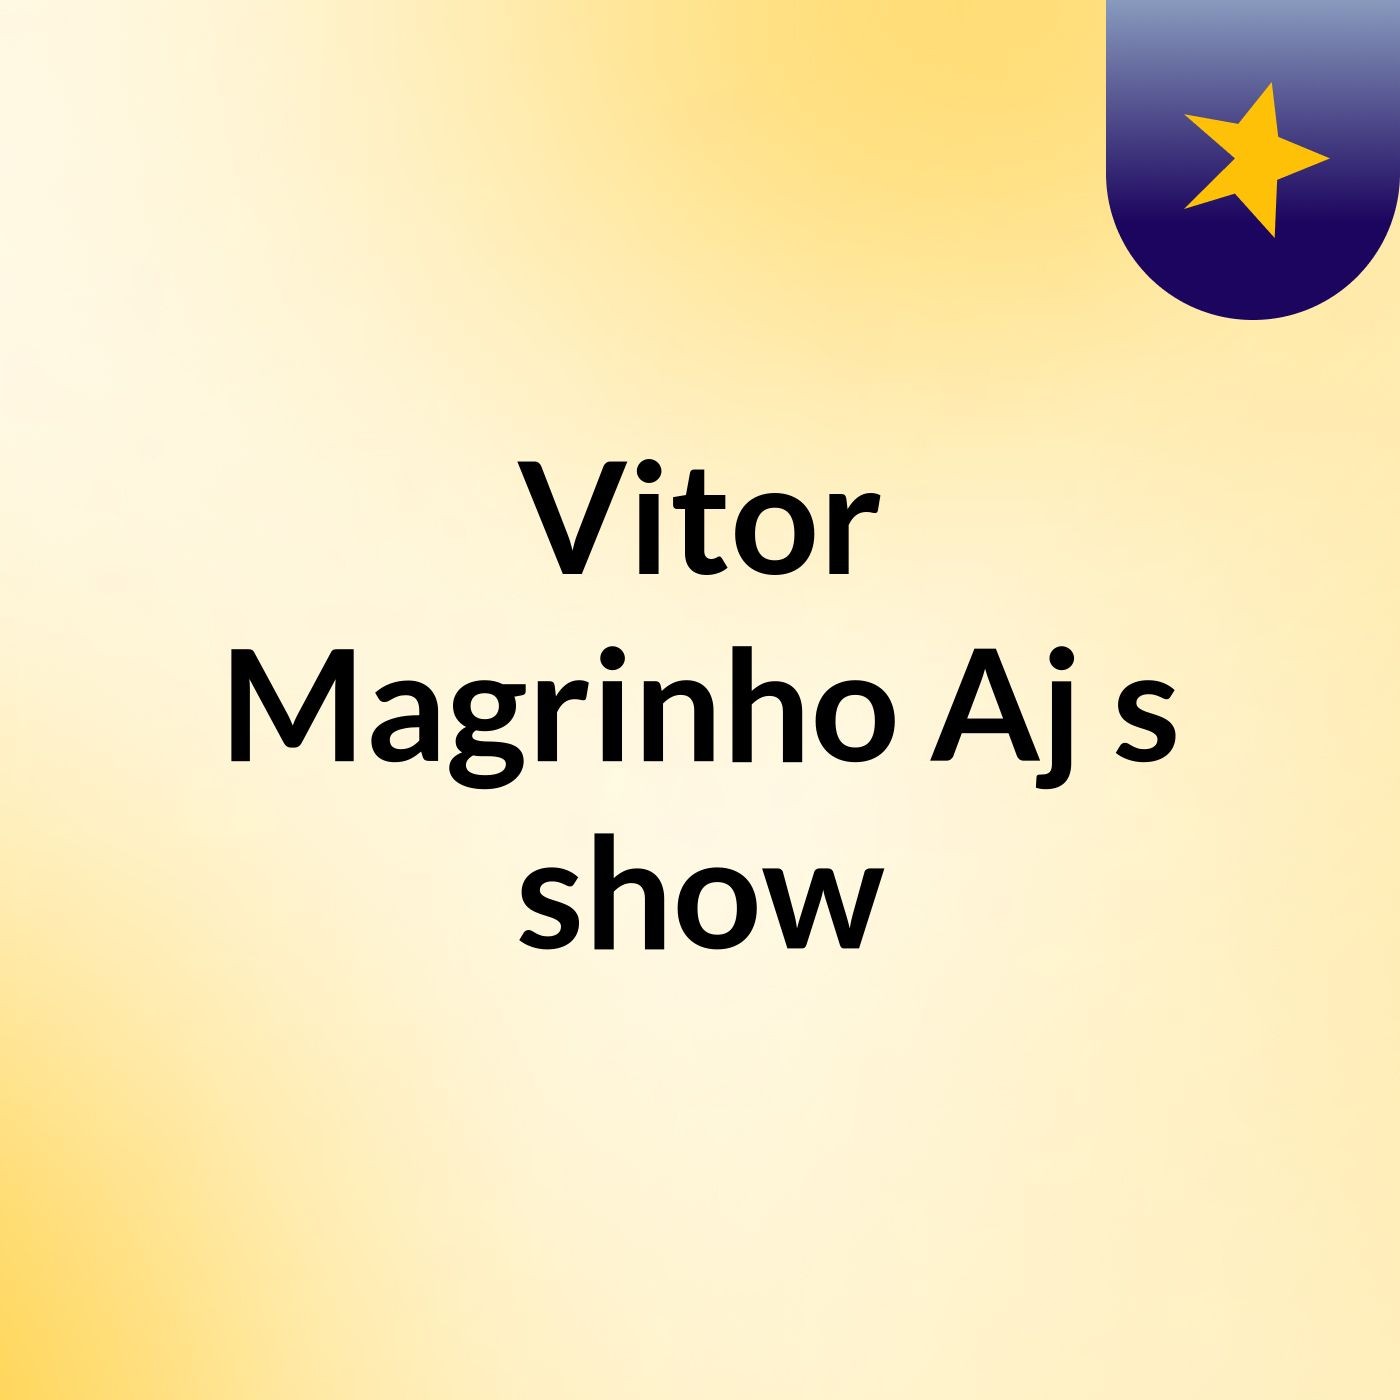 Vitor Magrinho Aj's show